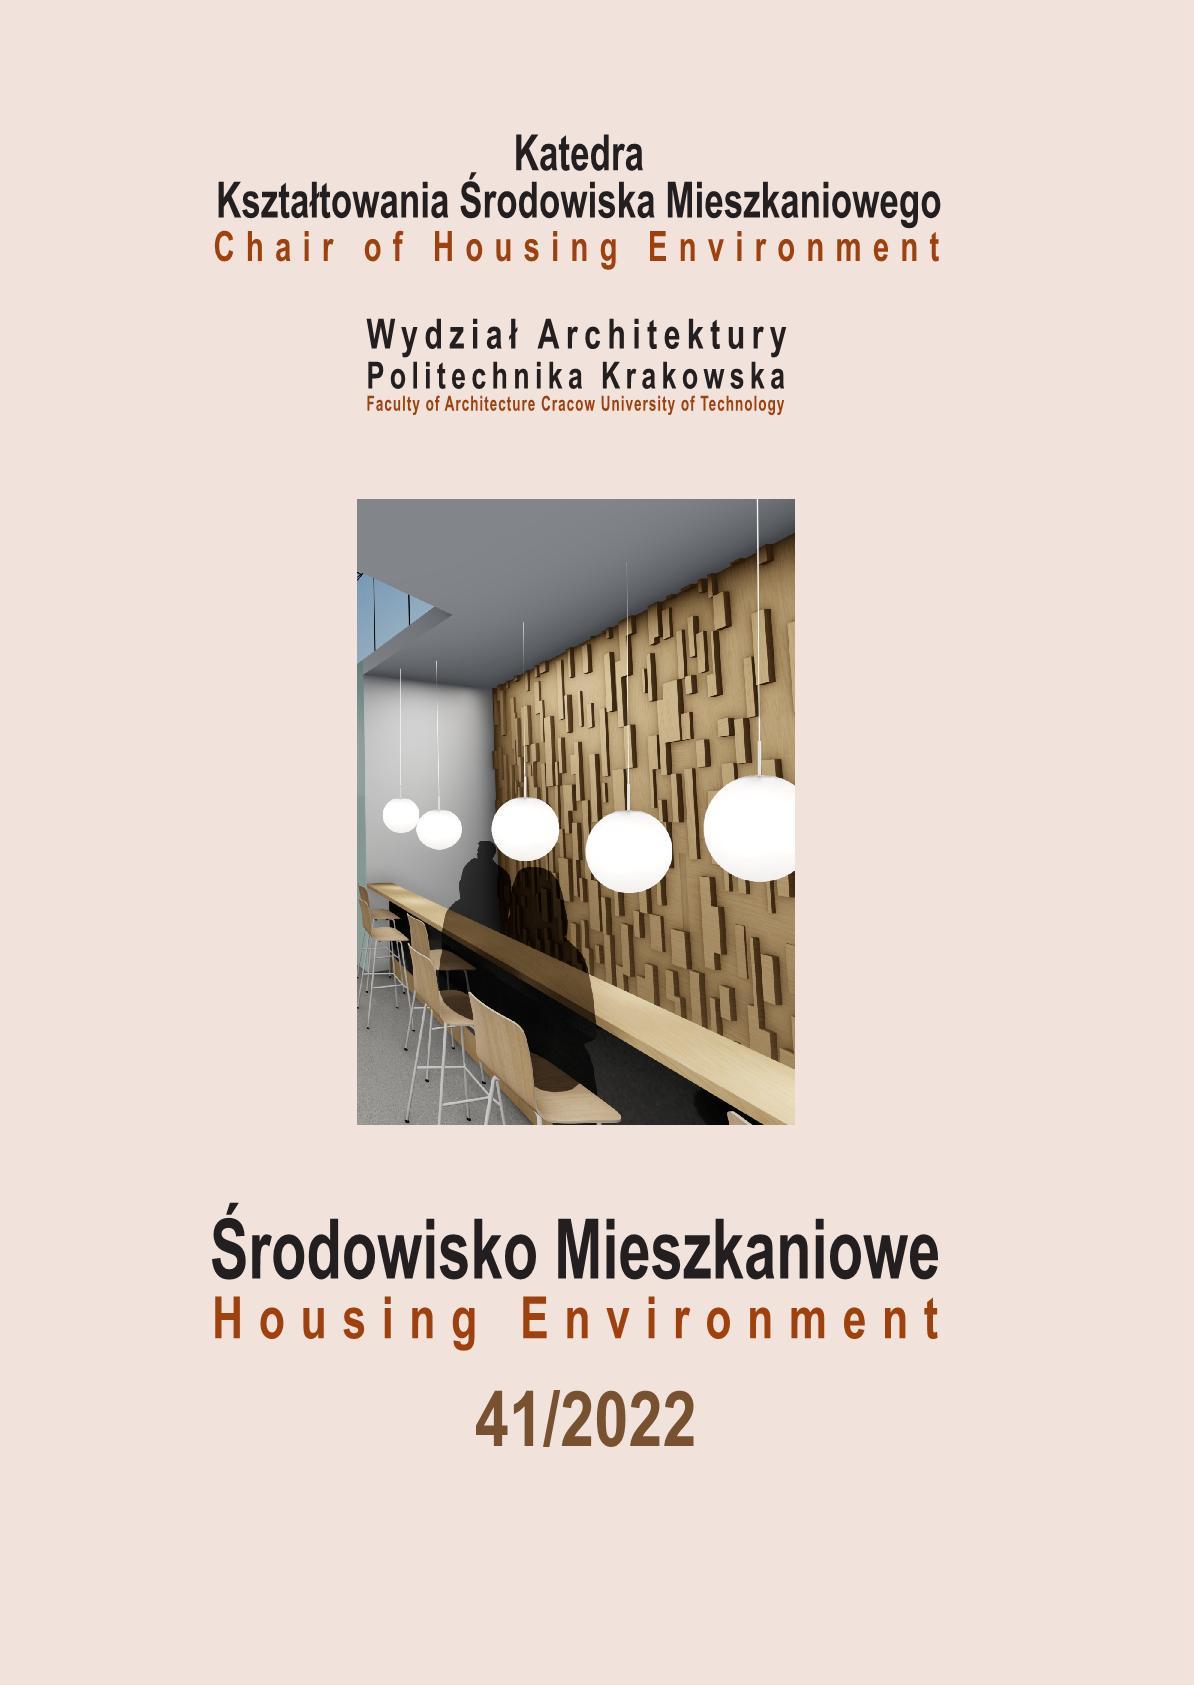 Przekształcenia architektury poprzemysłowej na funkcje mieszkaniowe - analiza wybranych przykładów z terenu Polski w oparciu o kryteria definicji loftów.